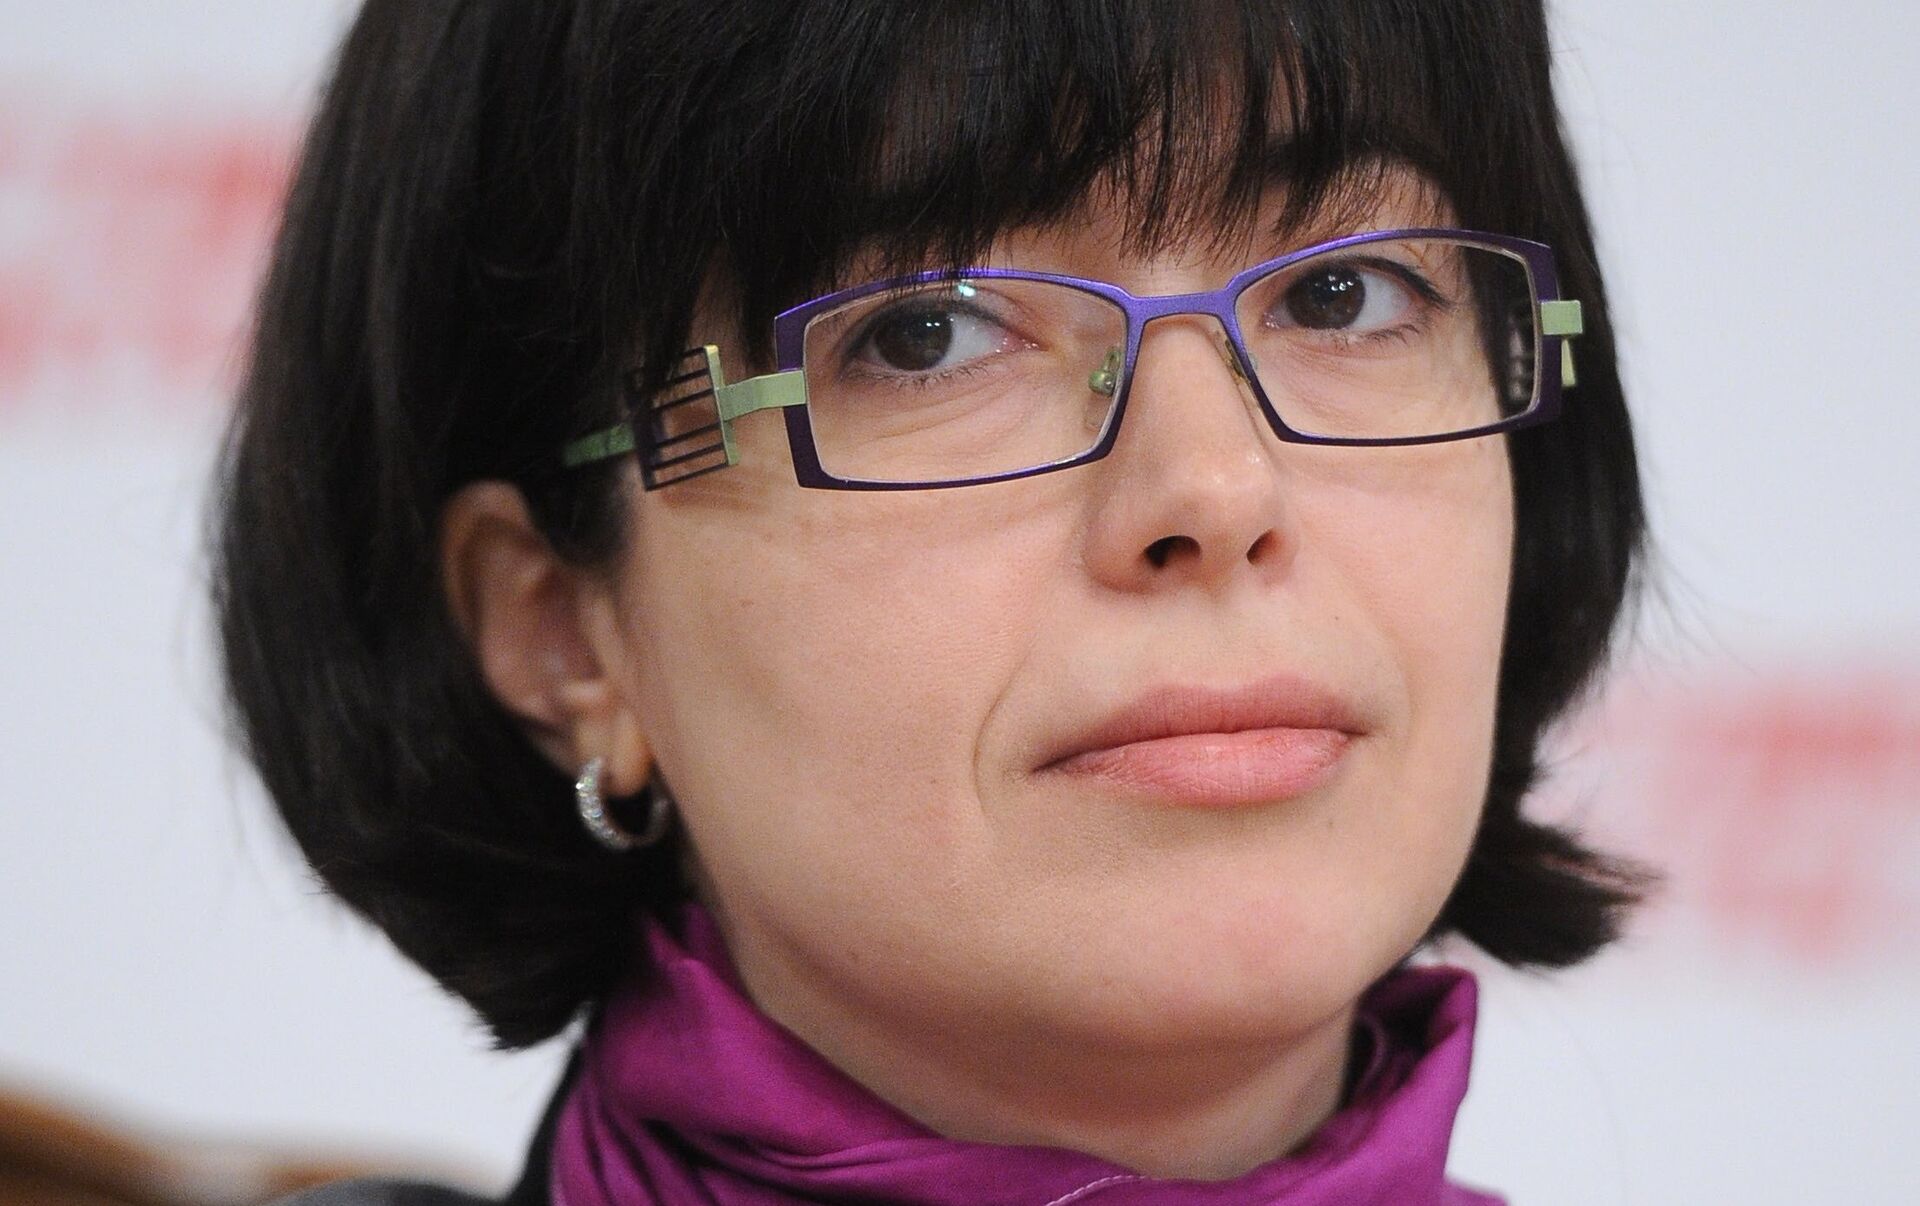 Майя Ломидзе